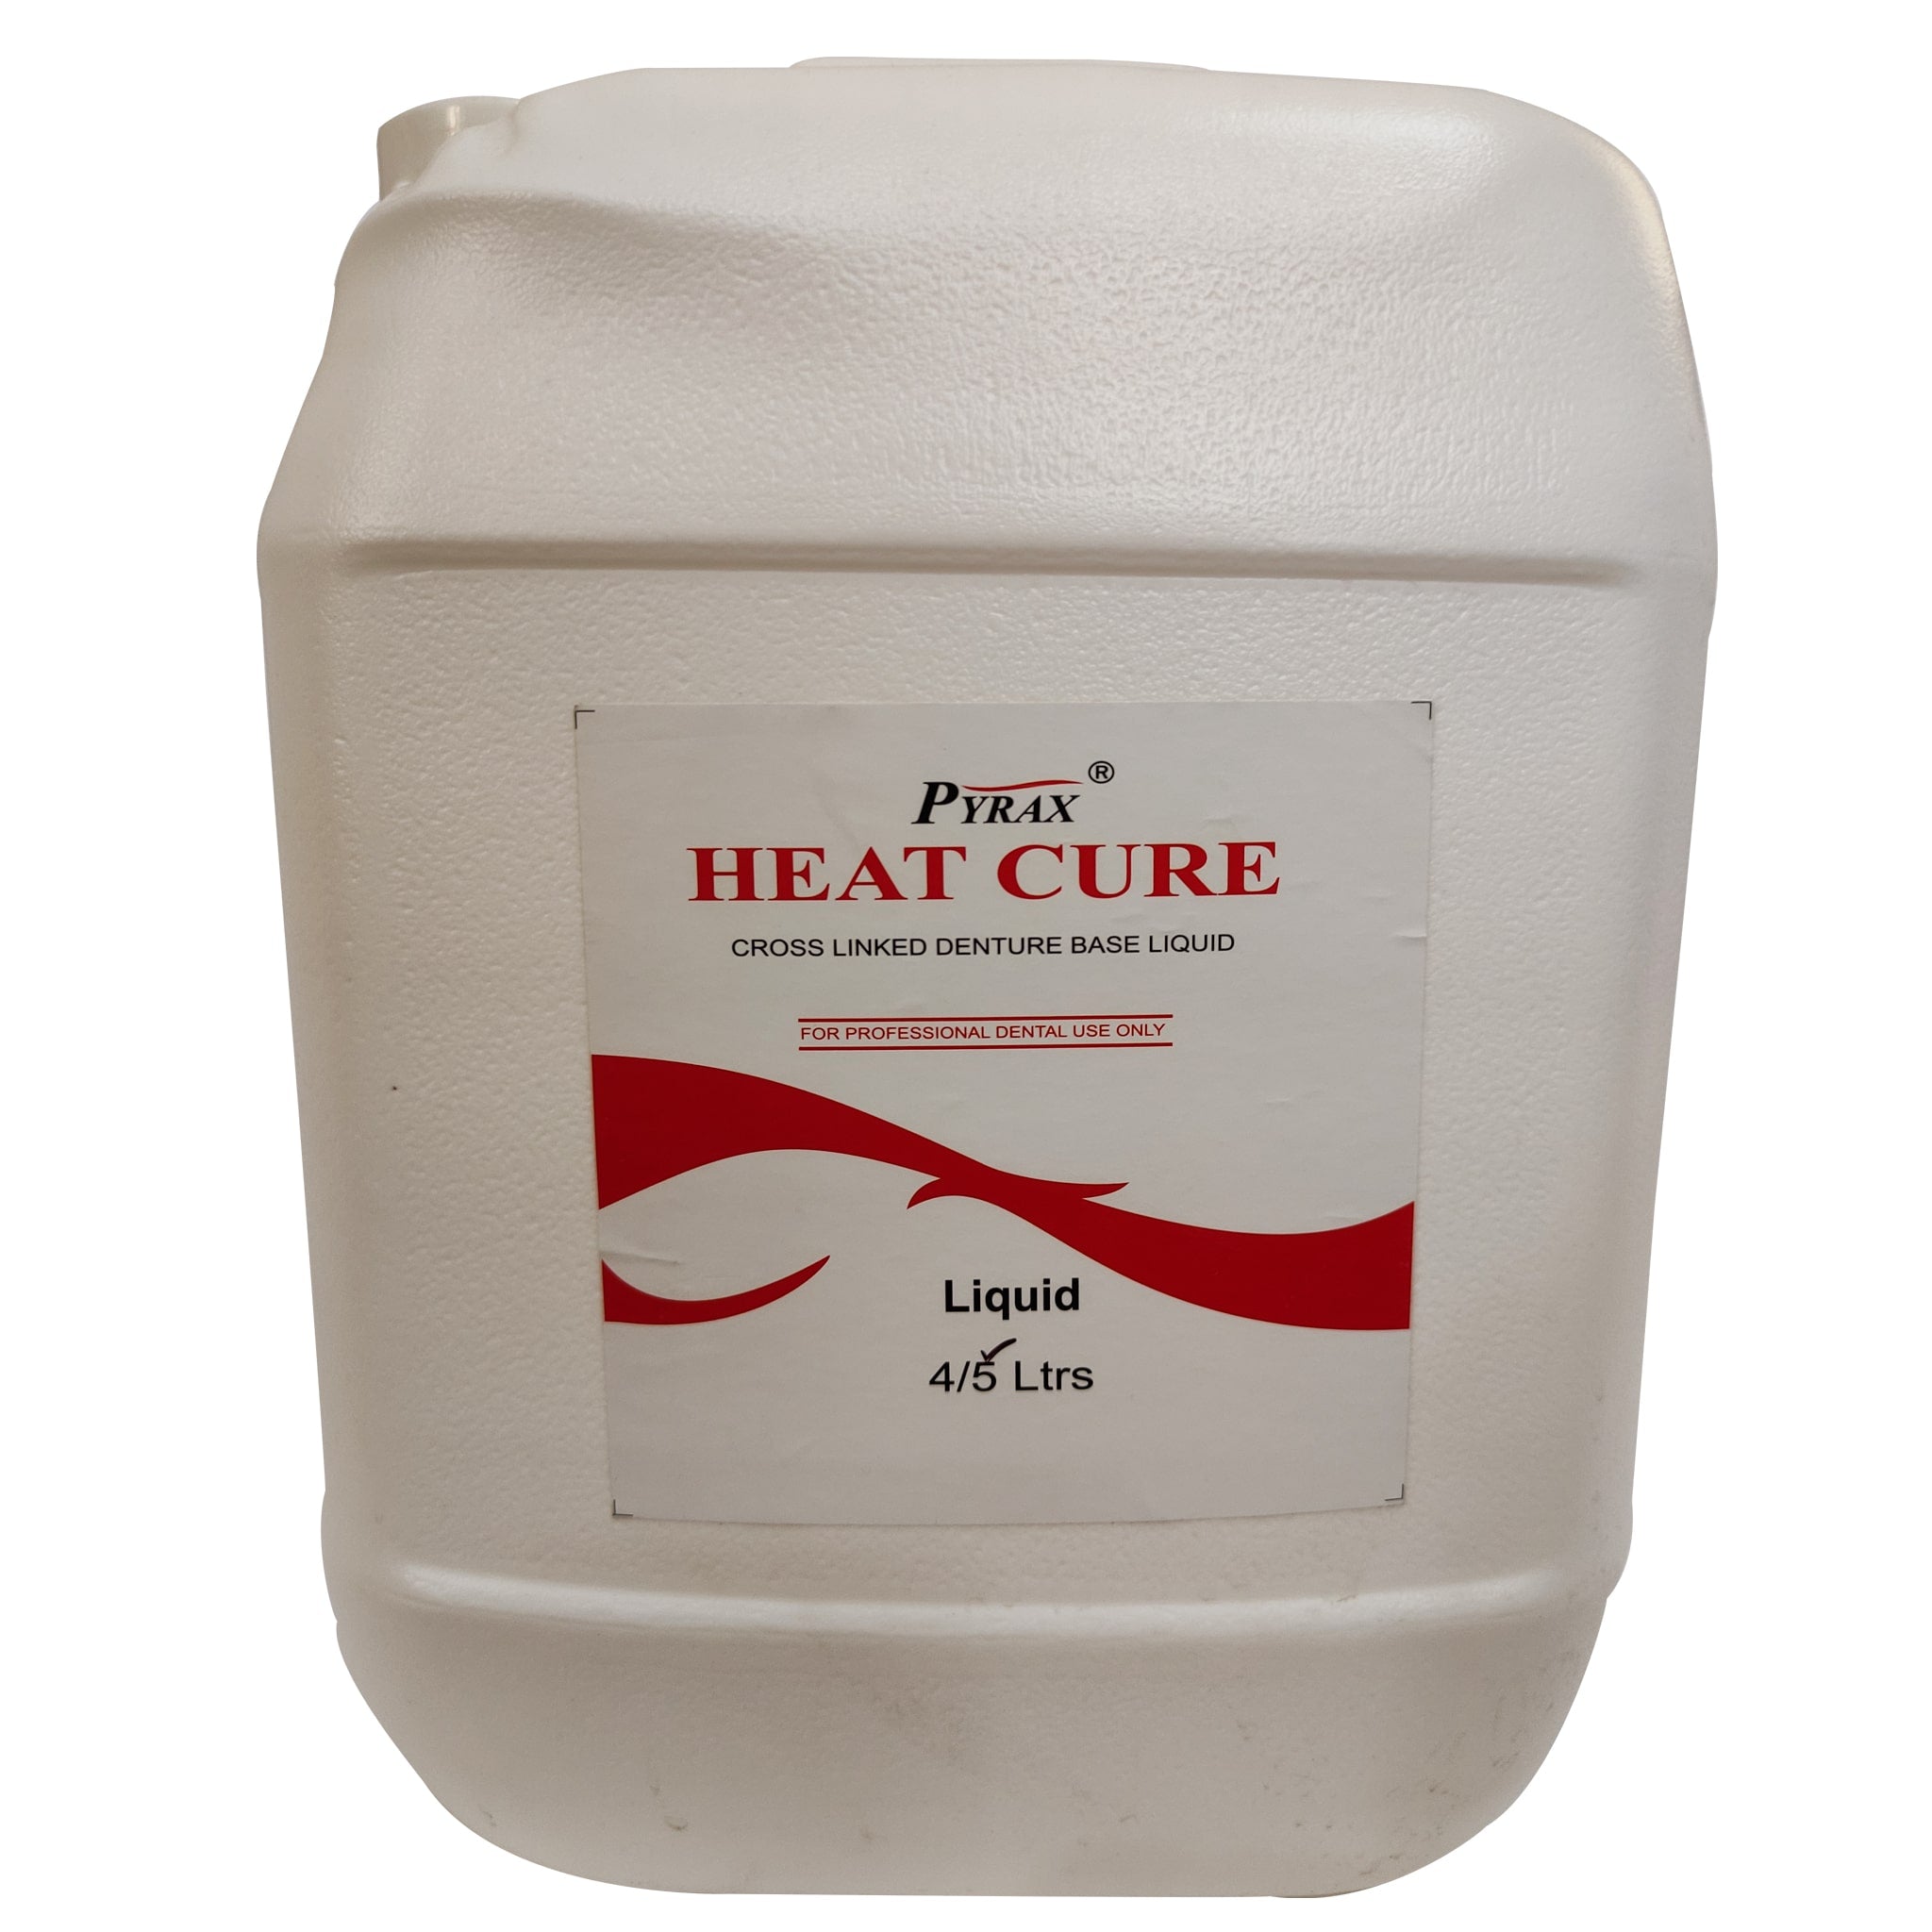 Pyrax Heat Cure Liquid